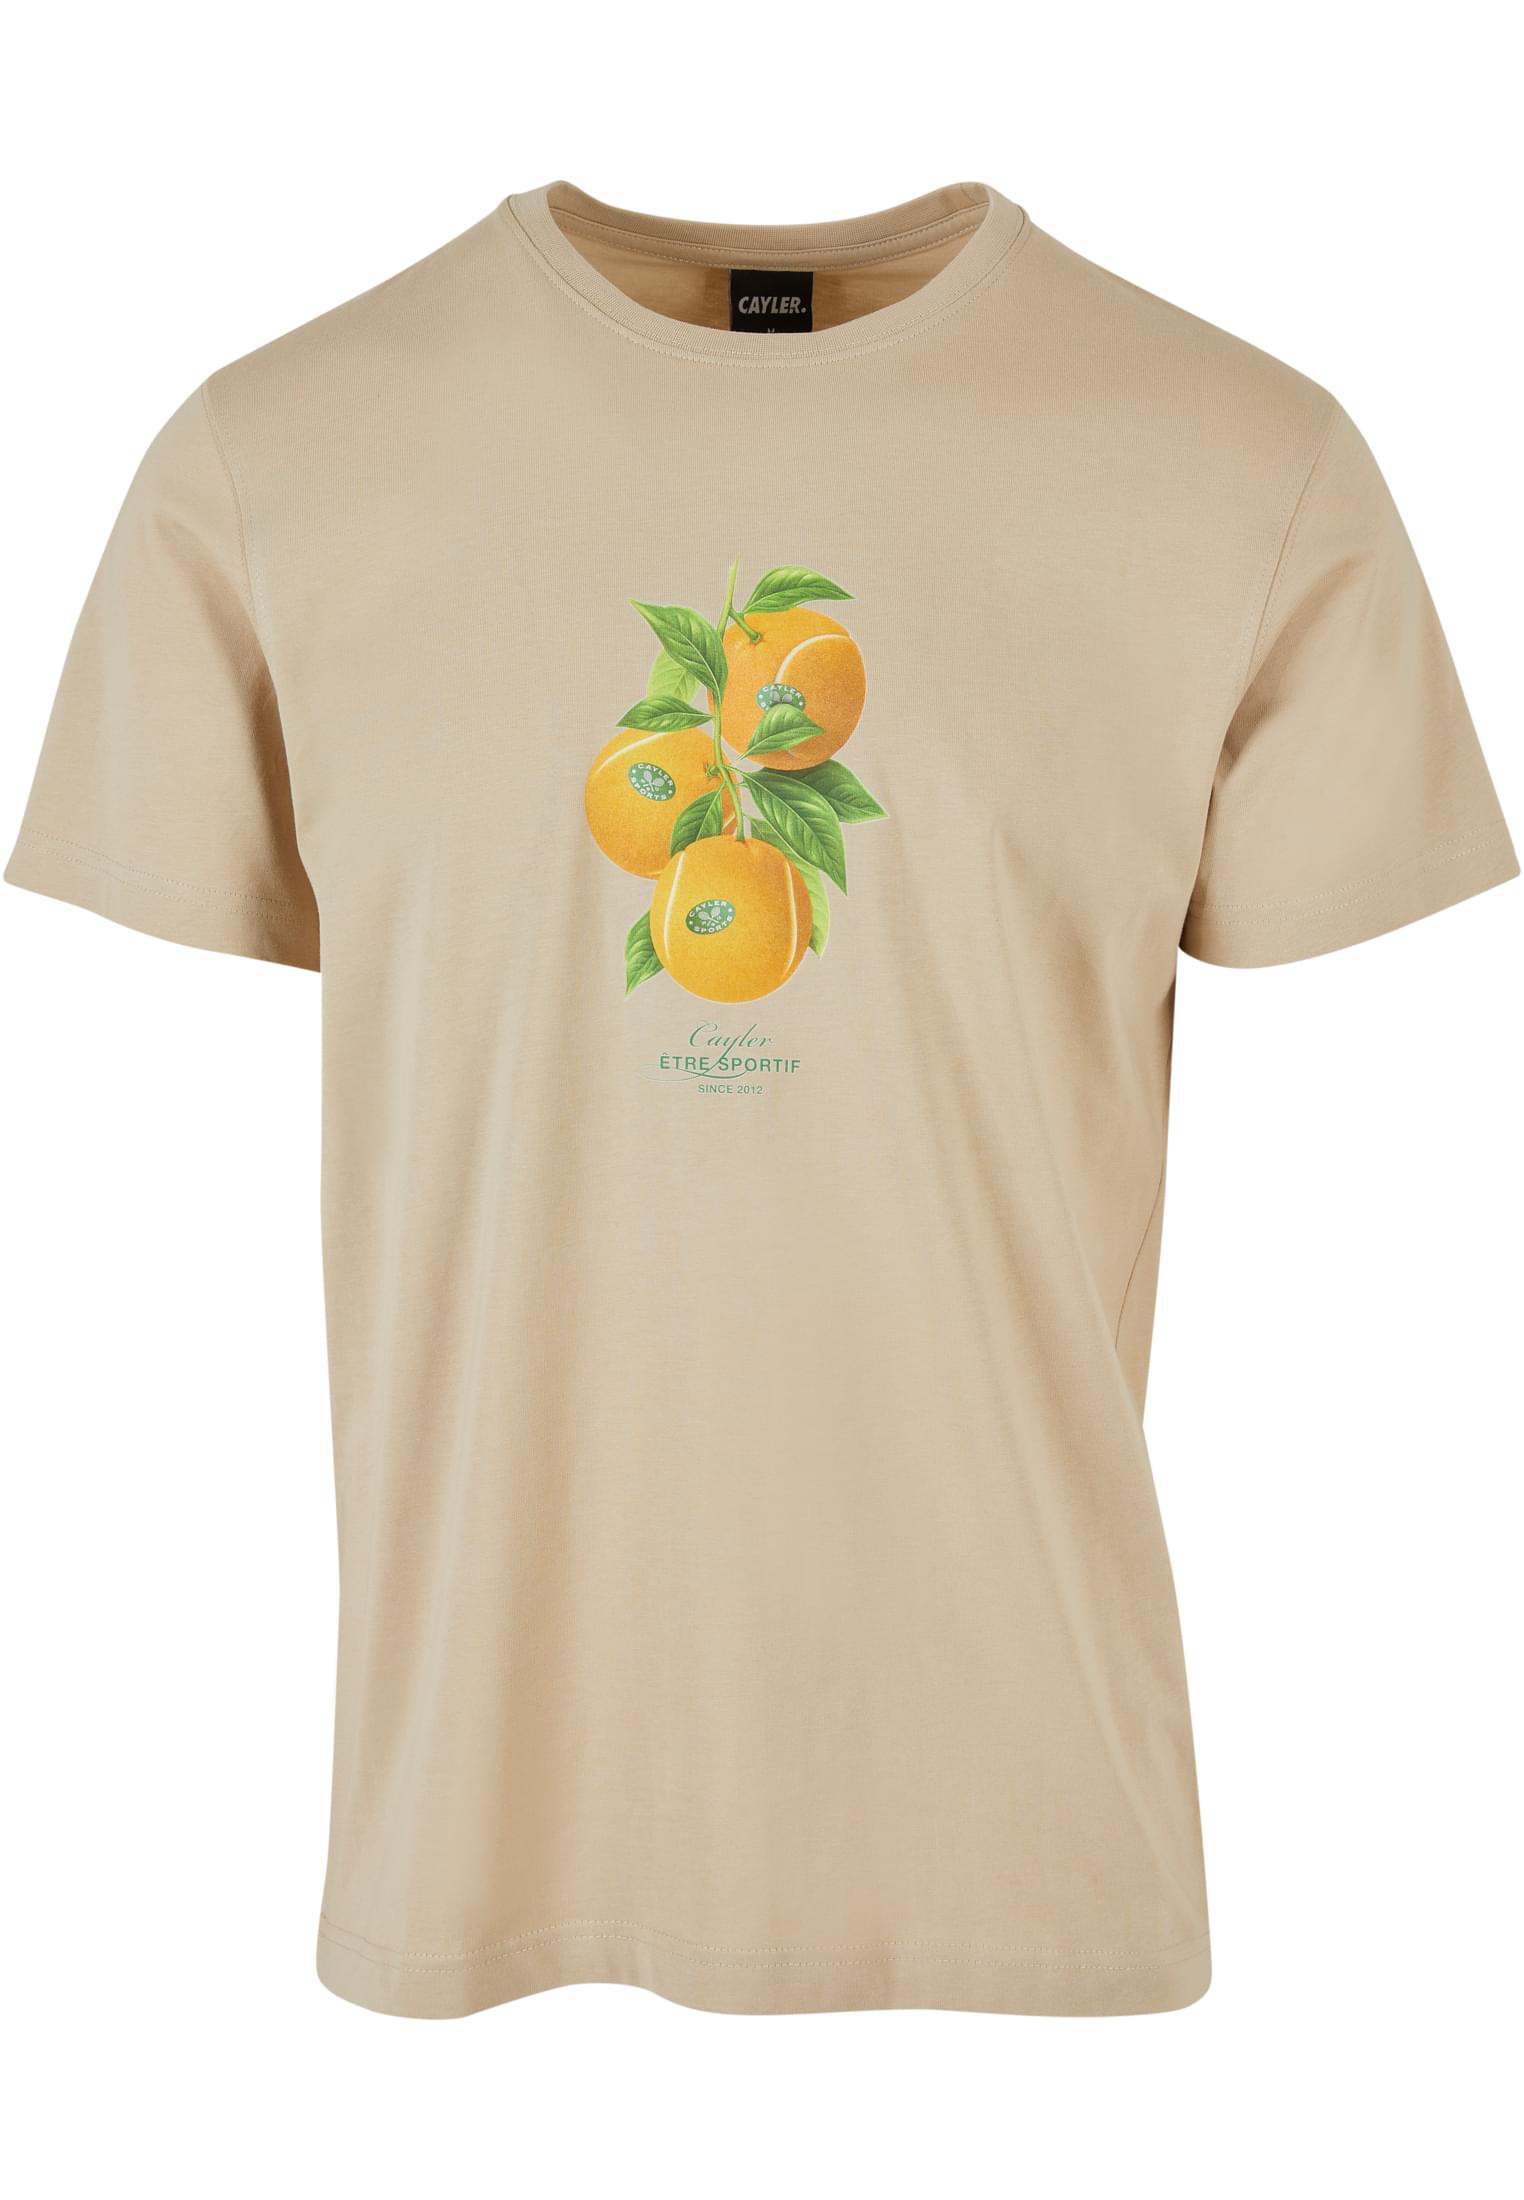 Men's T-shirt Vitamine Tennis - Beige